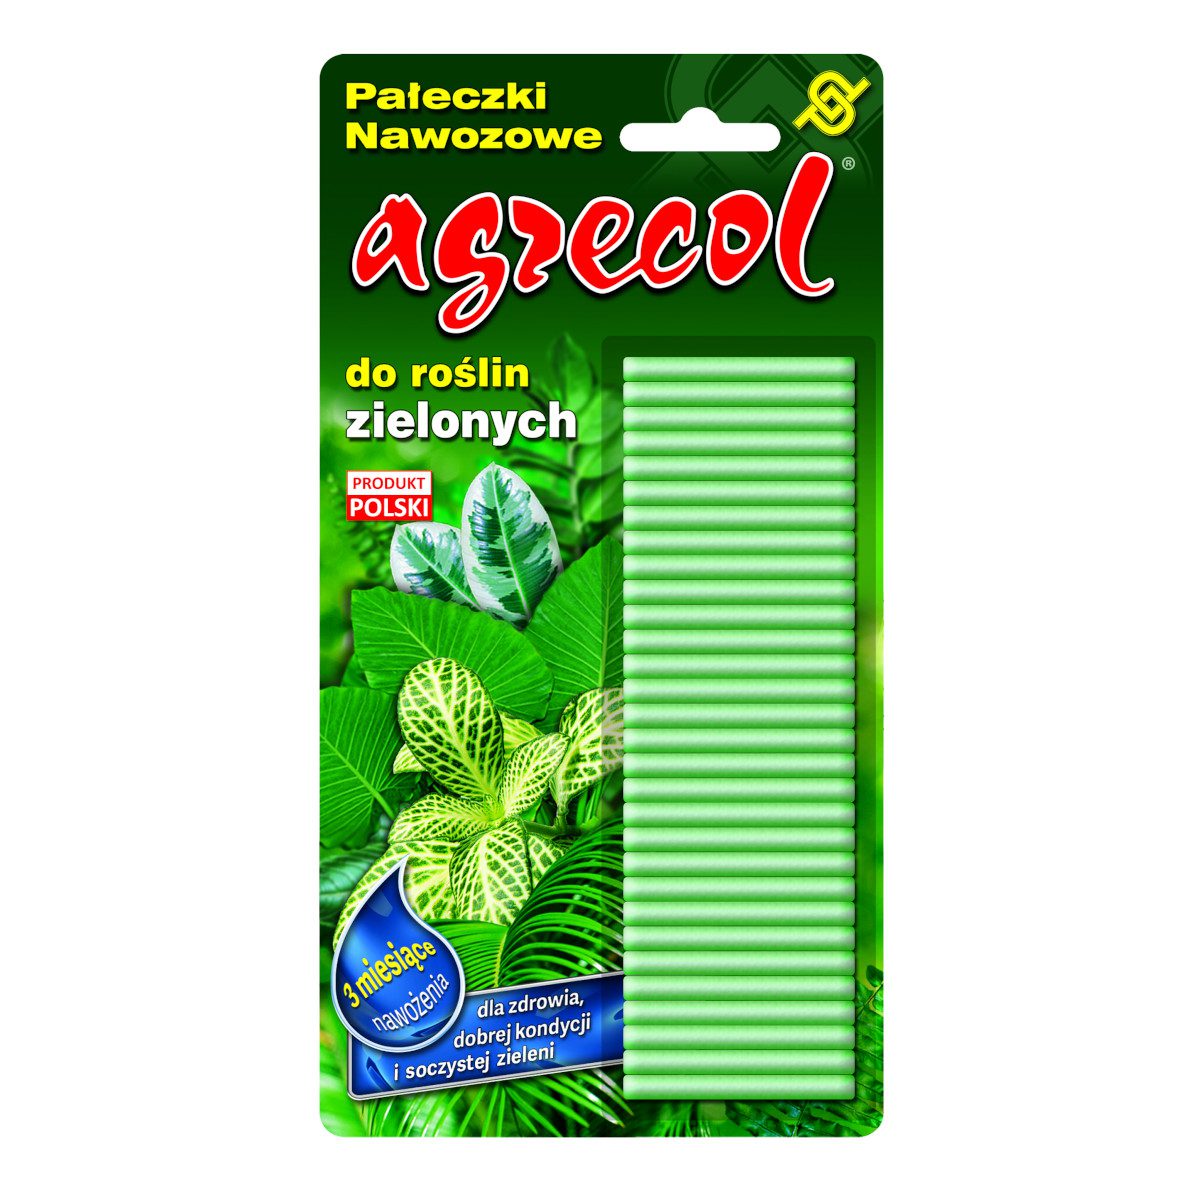 Agrecol Pałeczki nawozowe do roślin zielonych